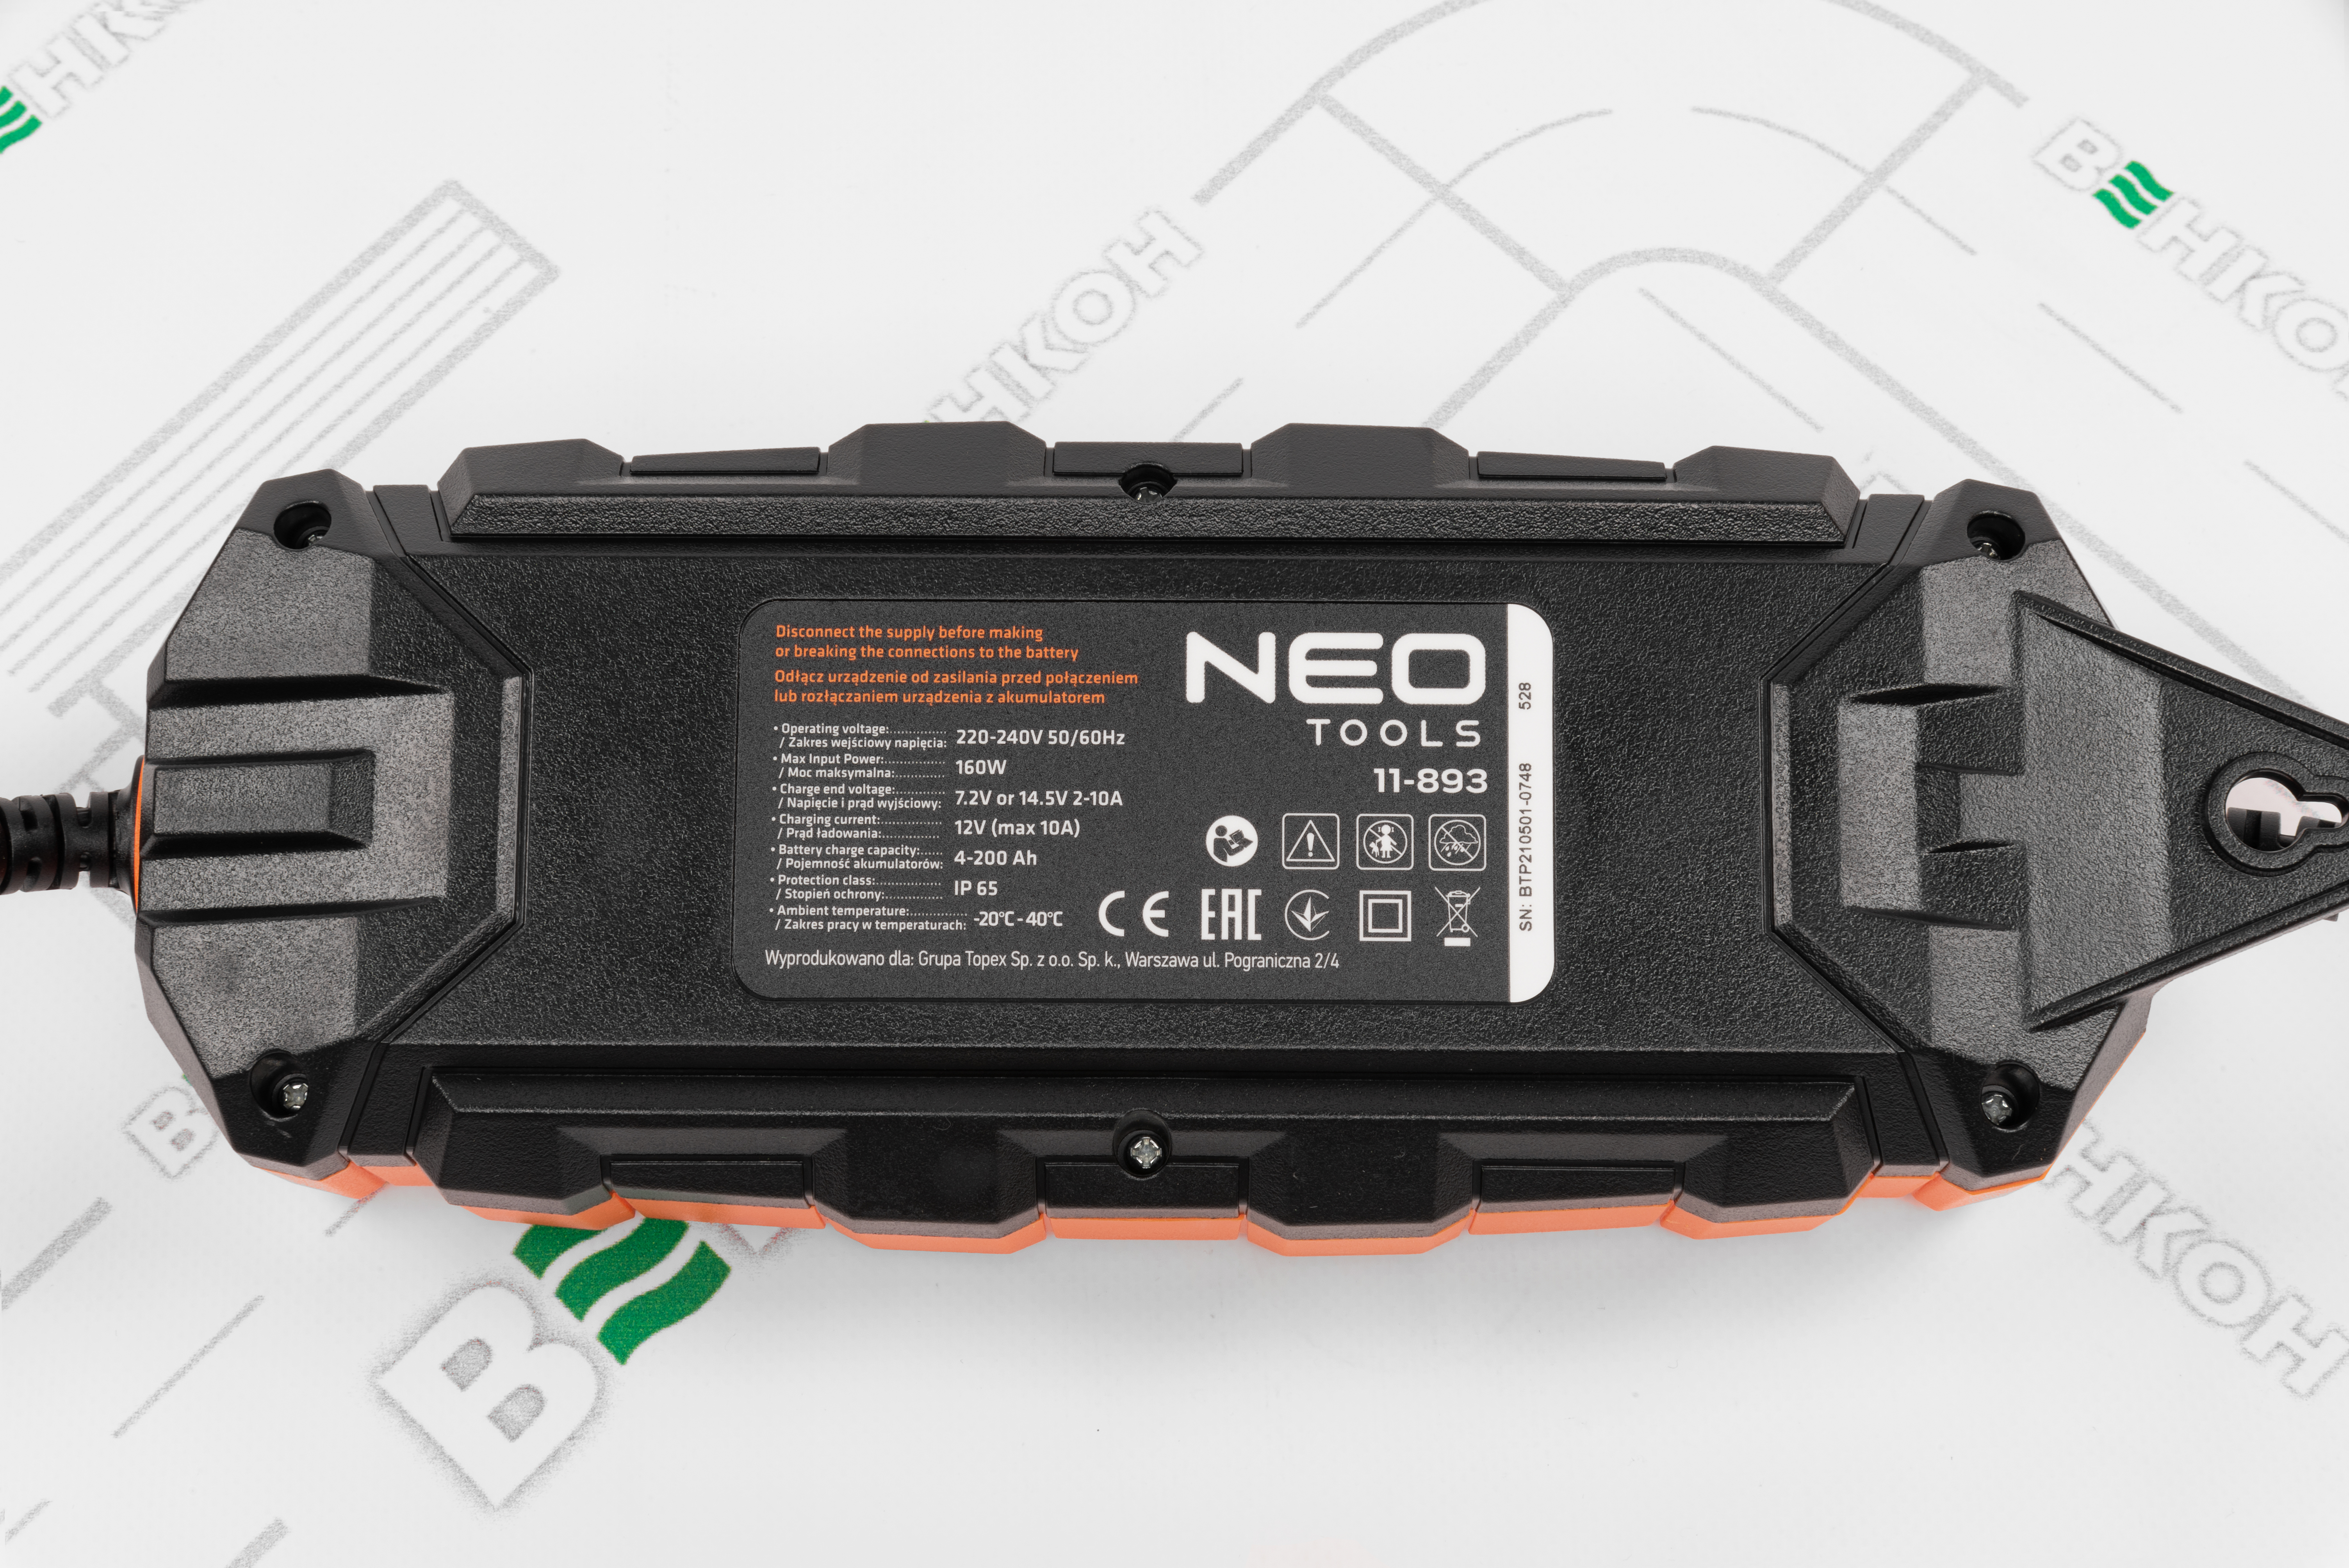 продаём Neo Tools 11-893 в Украине - фото 4